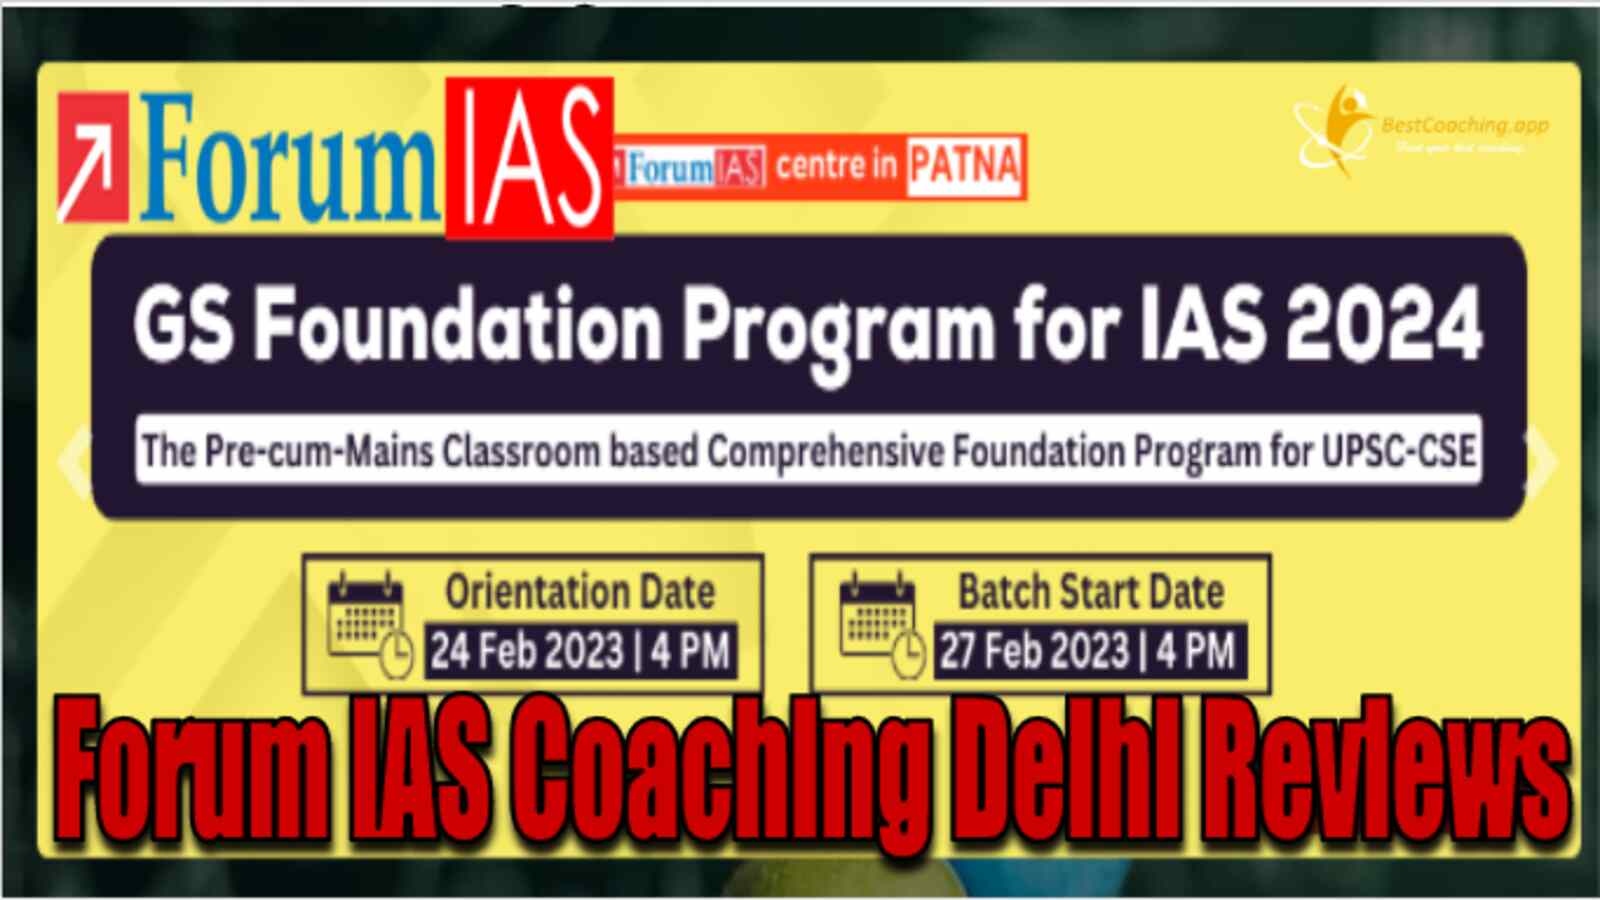 Forum IAS Coaching Institute in Delhi Review